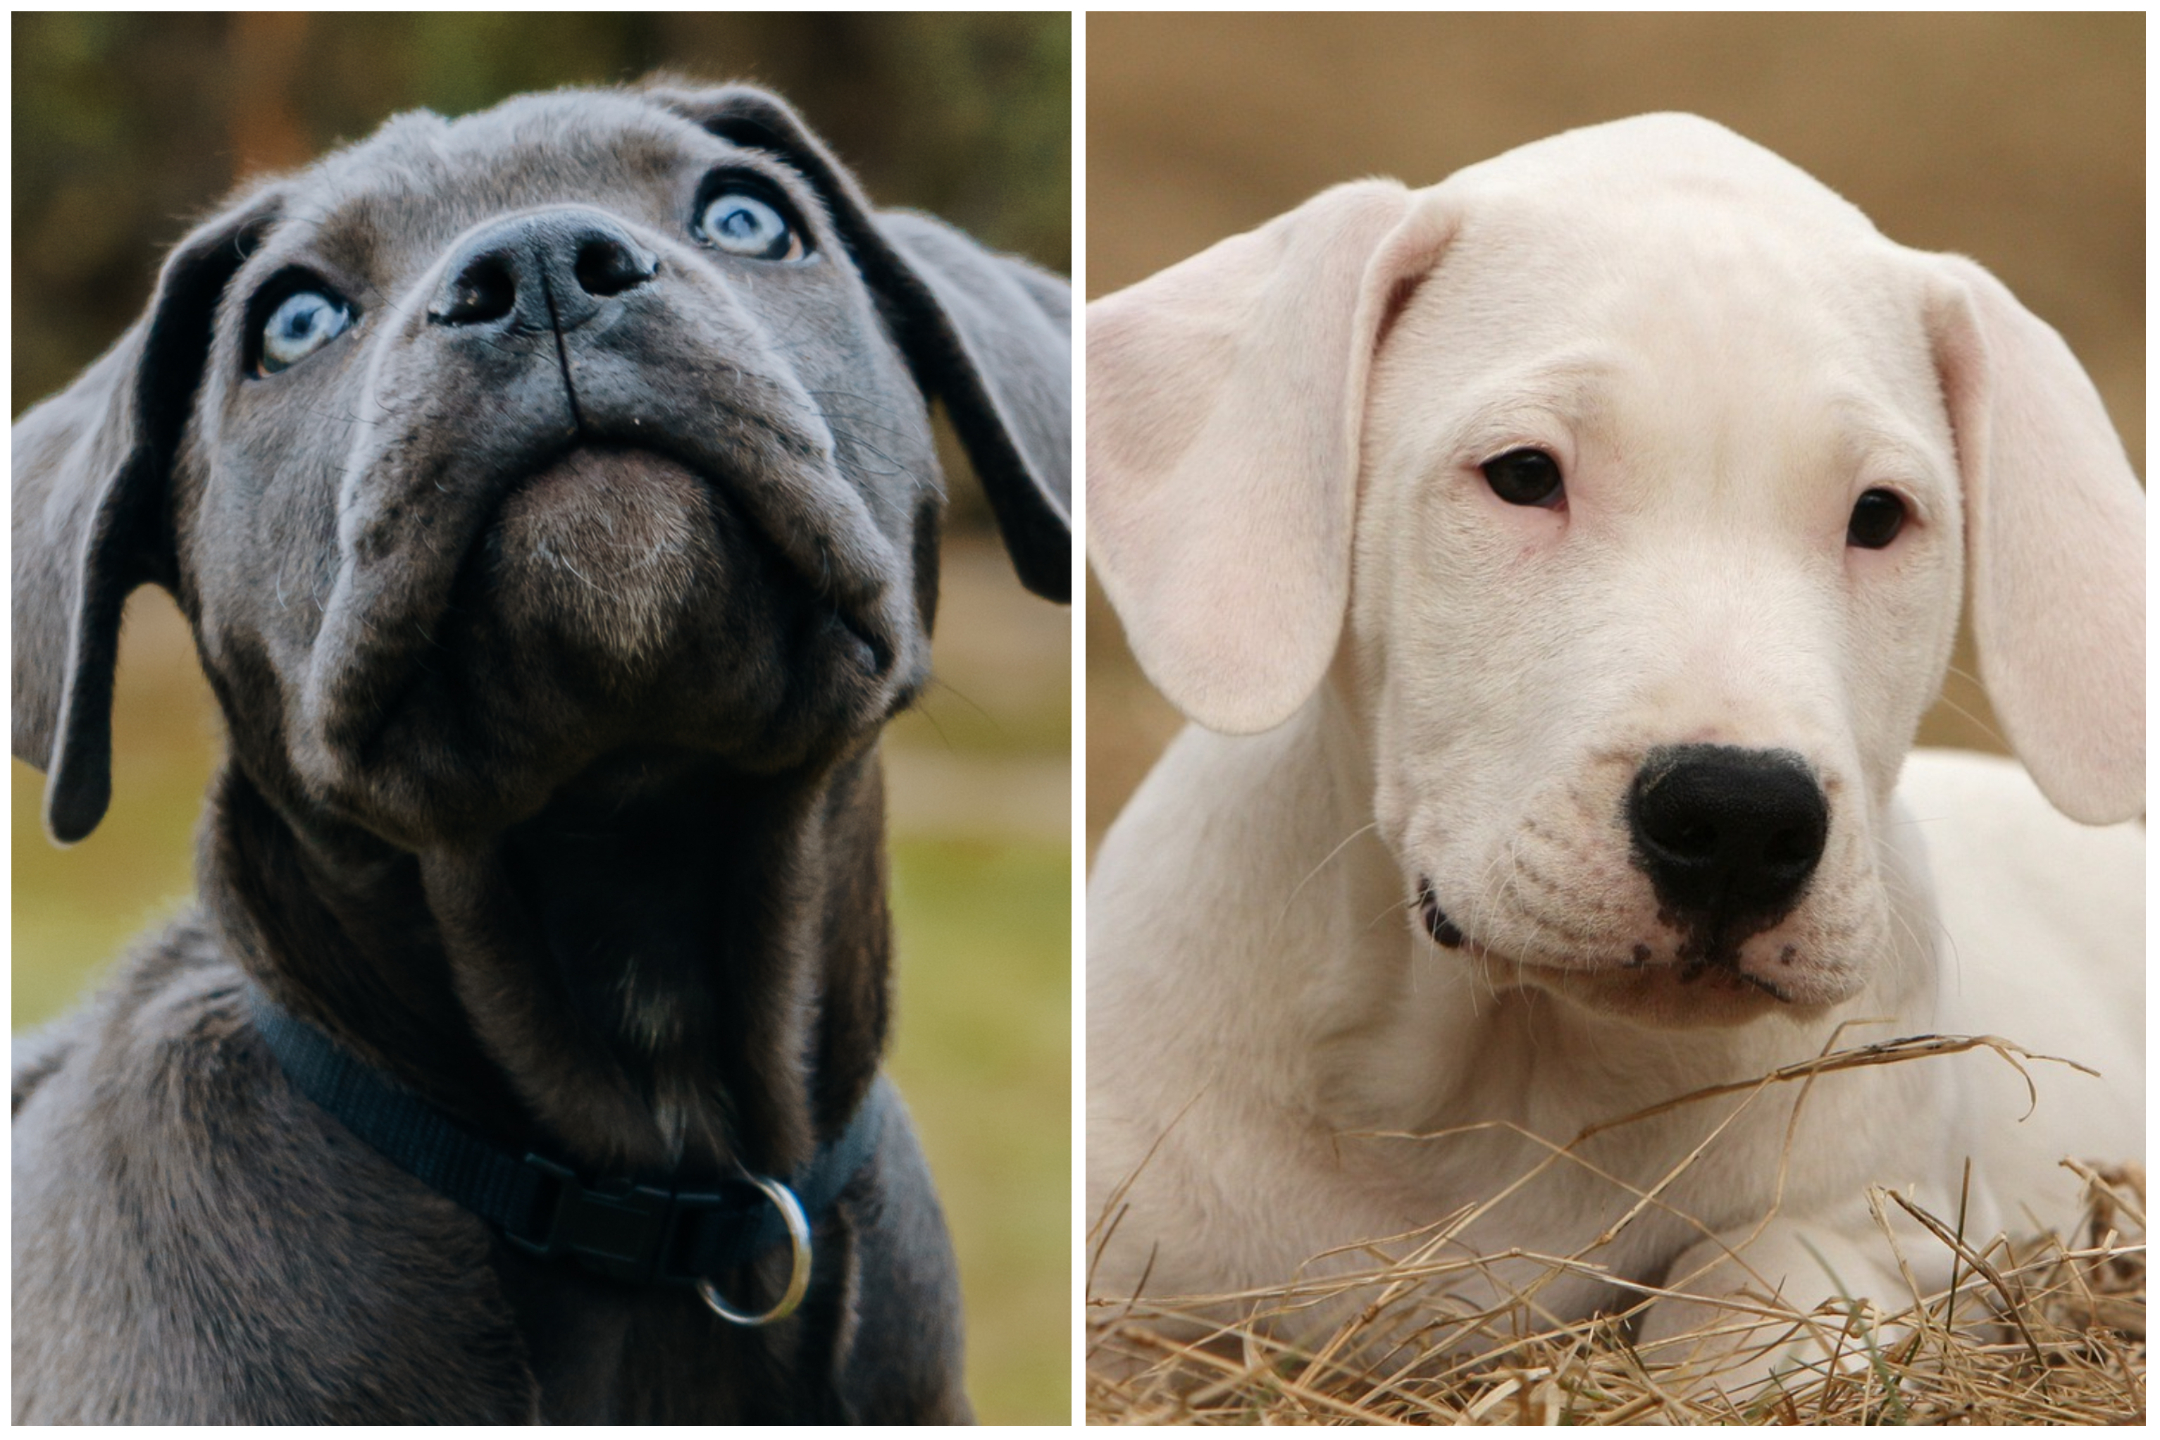 Cane Corso VS Dogo Argentino: Which Breed Wins?